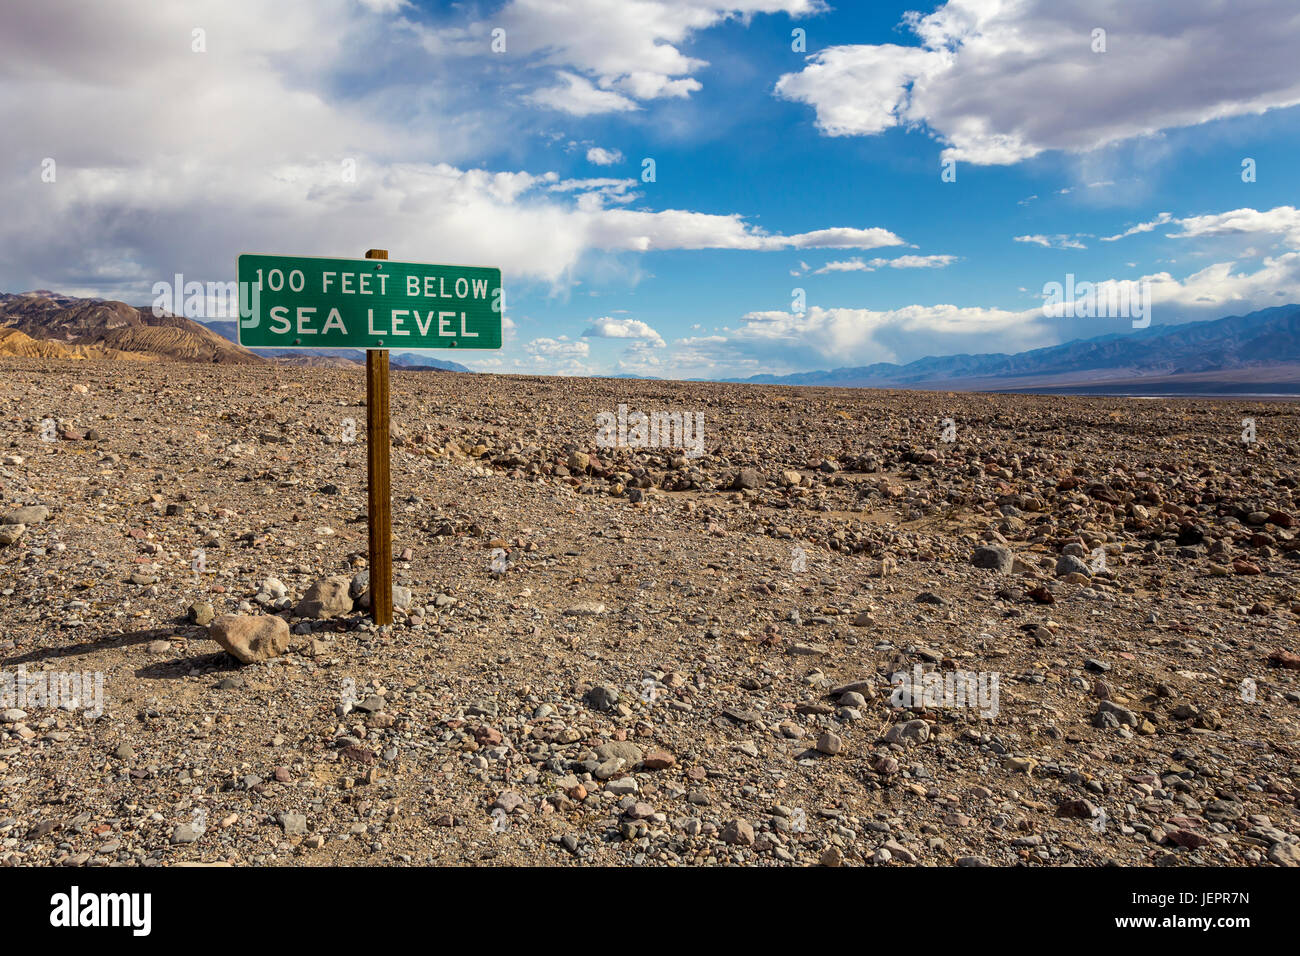 Signe du niveau de la mer, à 100 pieds au-dessous du niveau de la mer, le long de la State Route 190 à Badwater Road, Death Valley National Park, Death Valley, Californie Banque D'Images